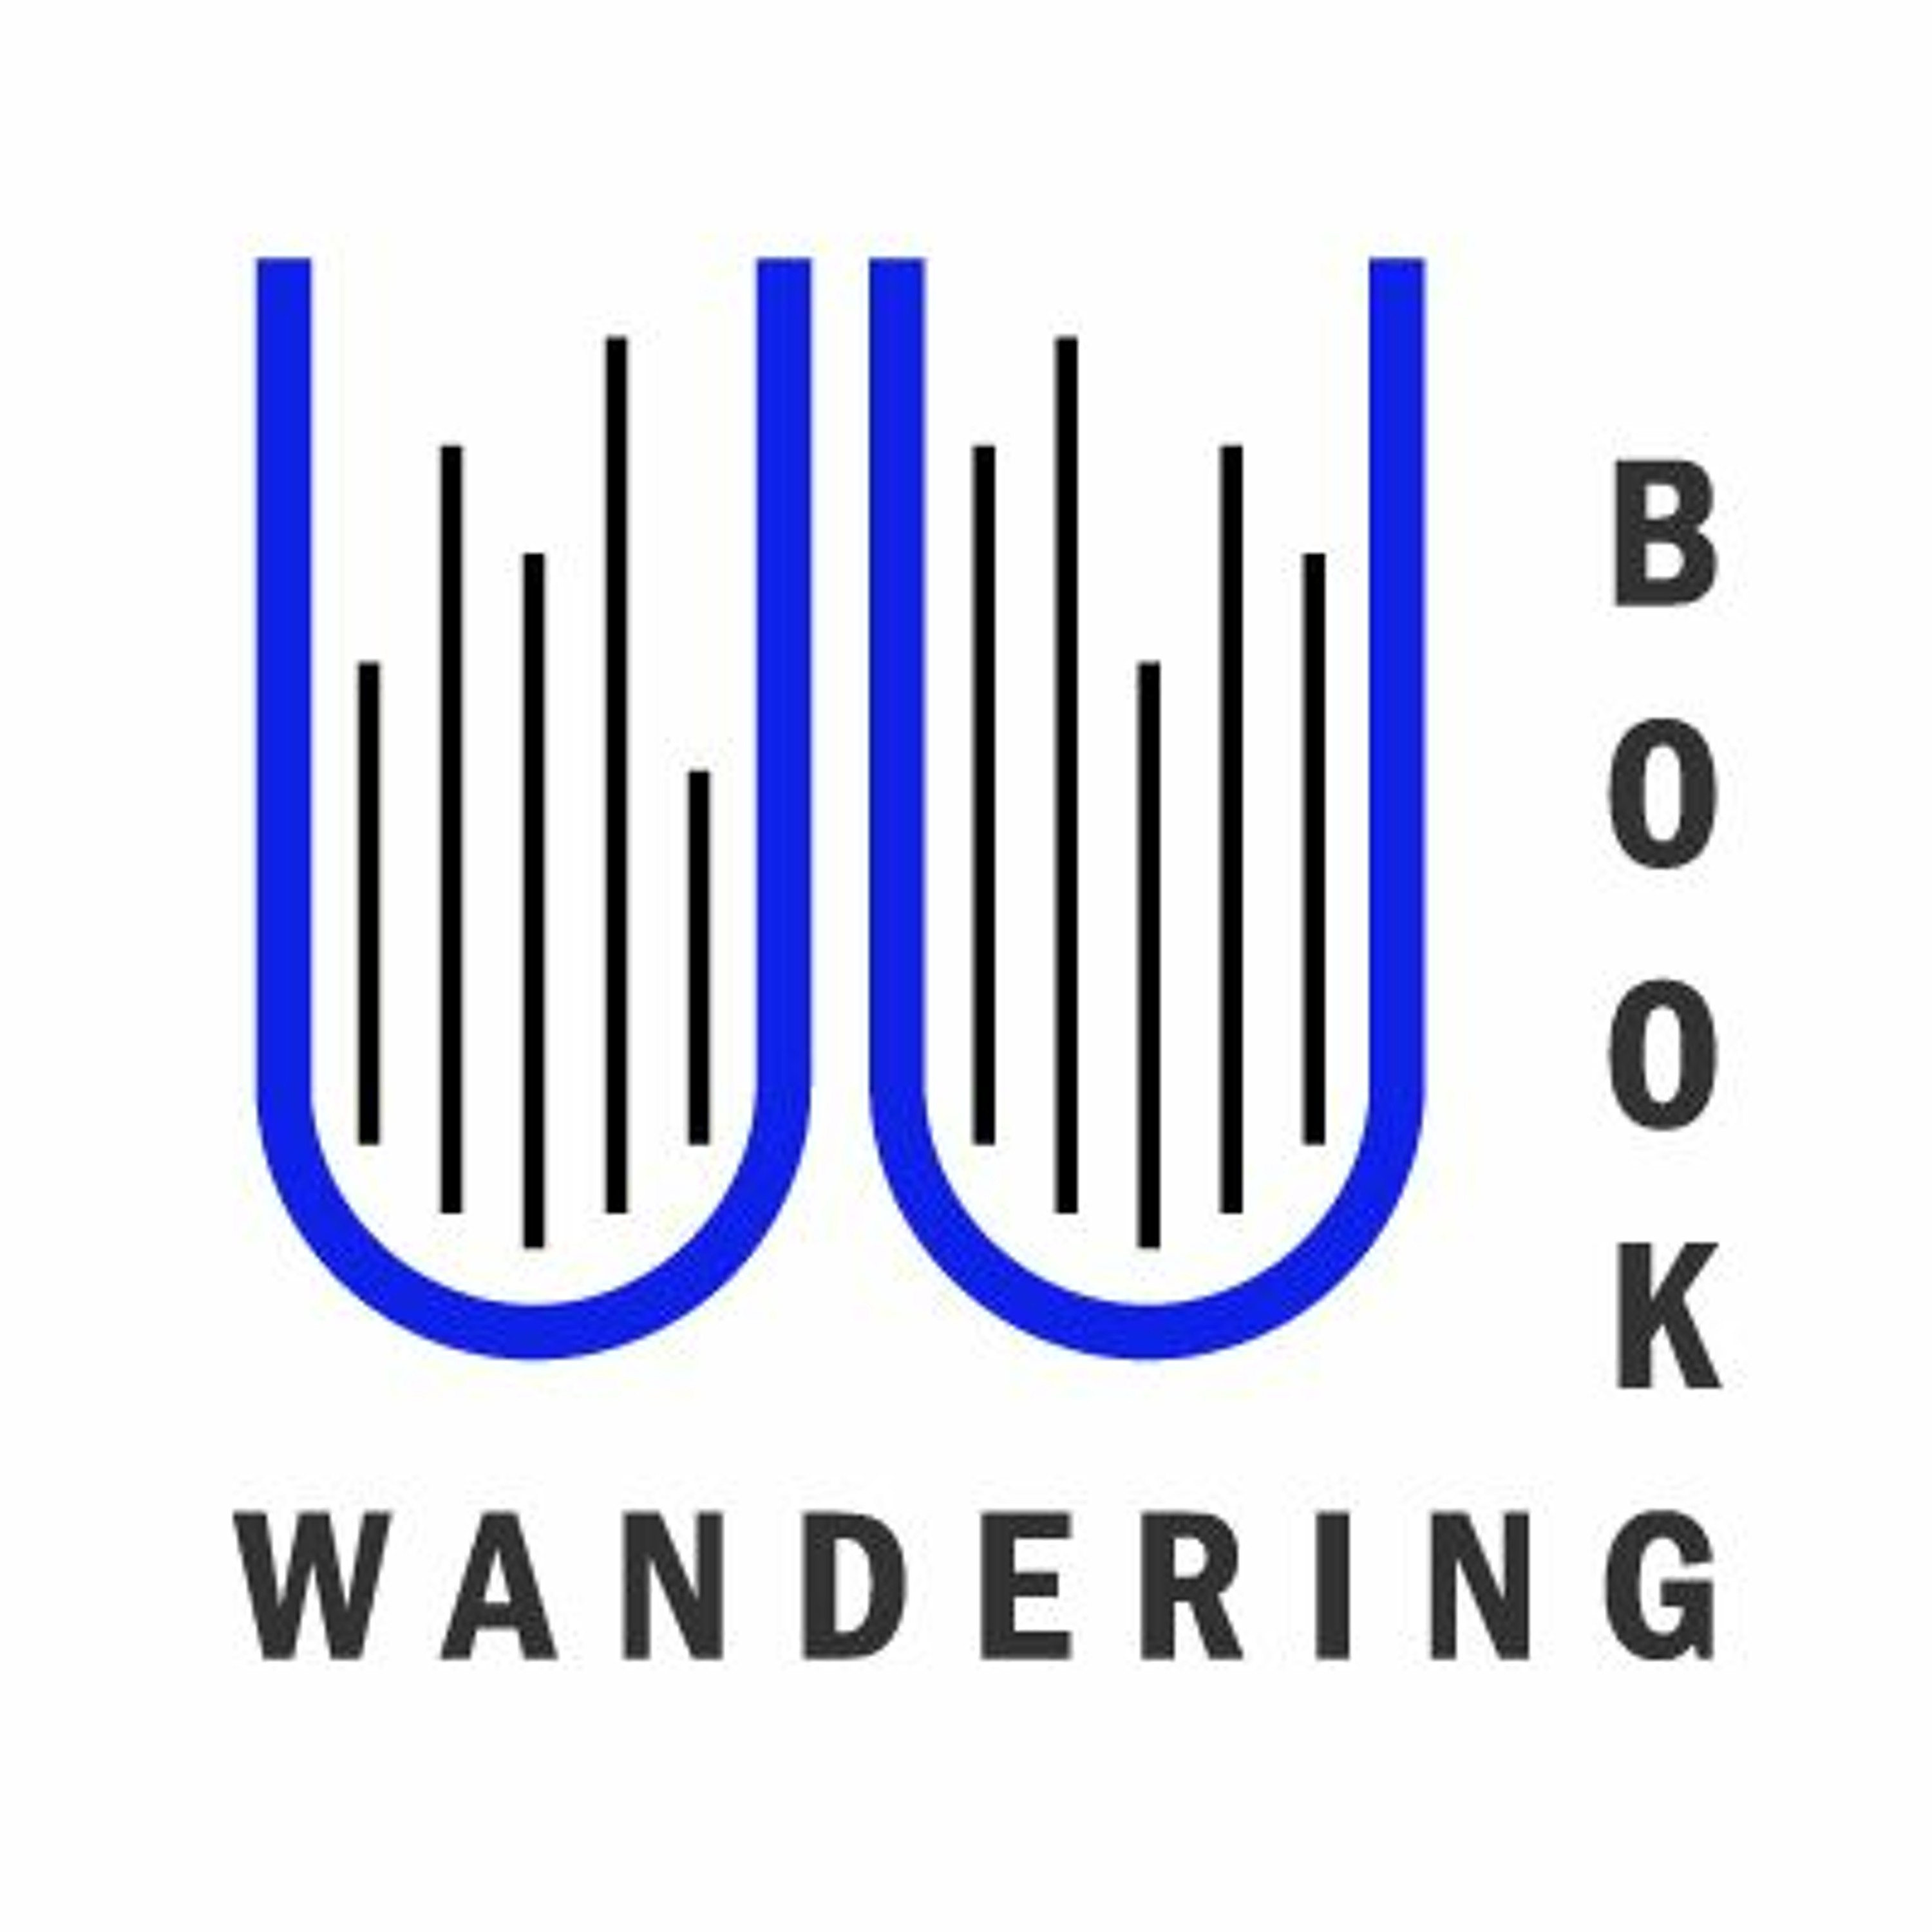 WanderingBook EP.37 ‘ลืมตาอ้าปาก จาก “ชาวนา” สู่ “ผู้ประกอบการ”’ ไม่มีแล้วมนต์รักลูกทุ่ง